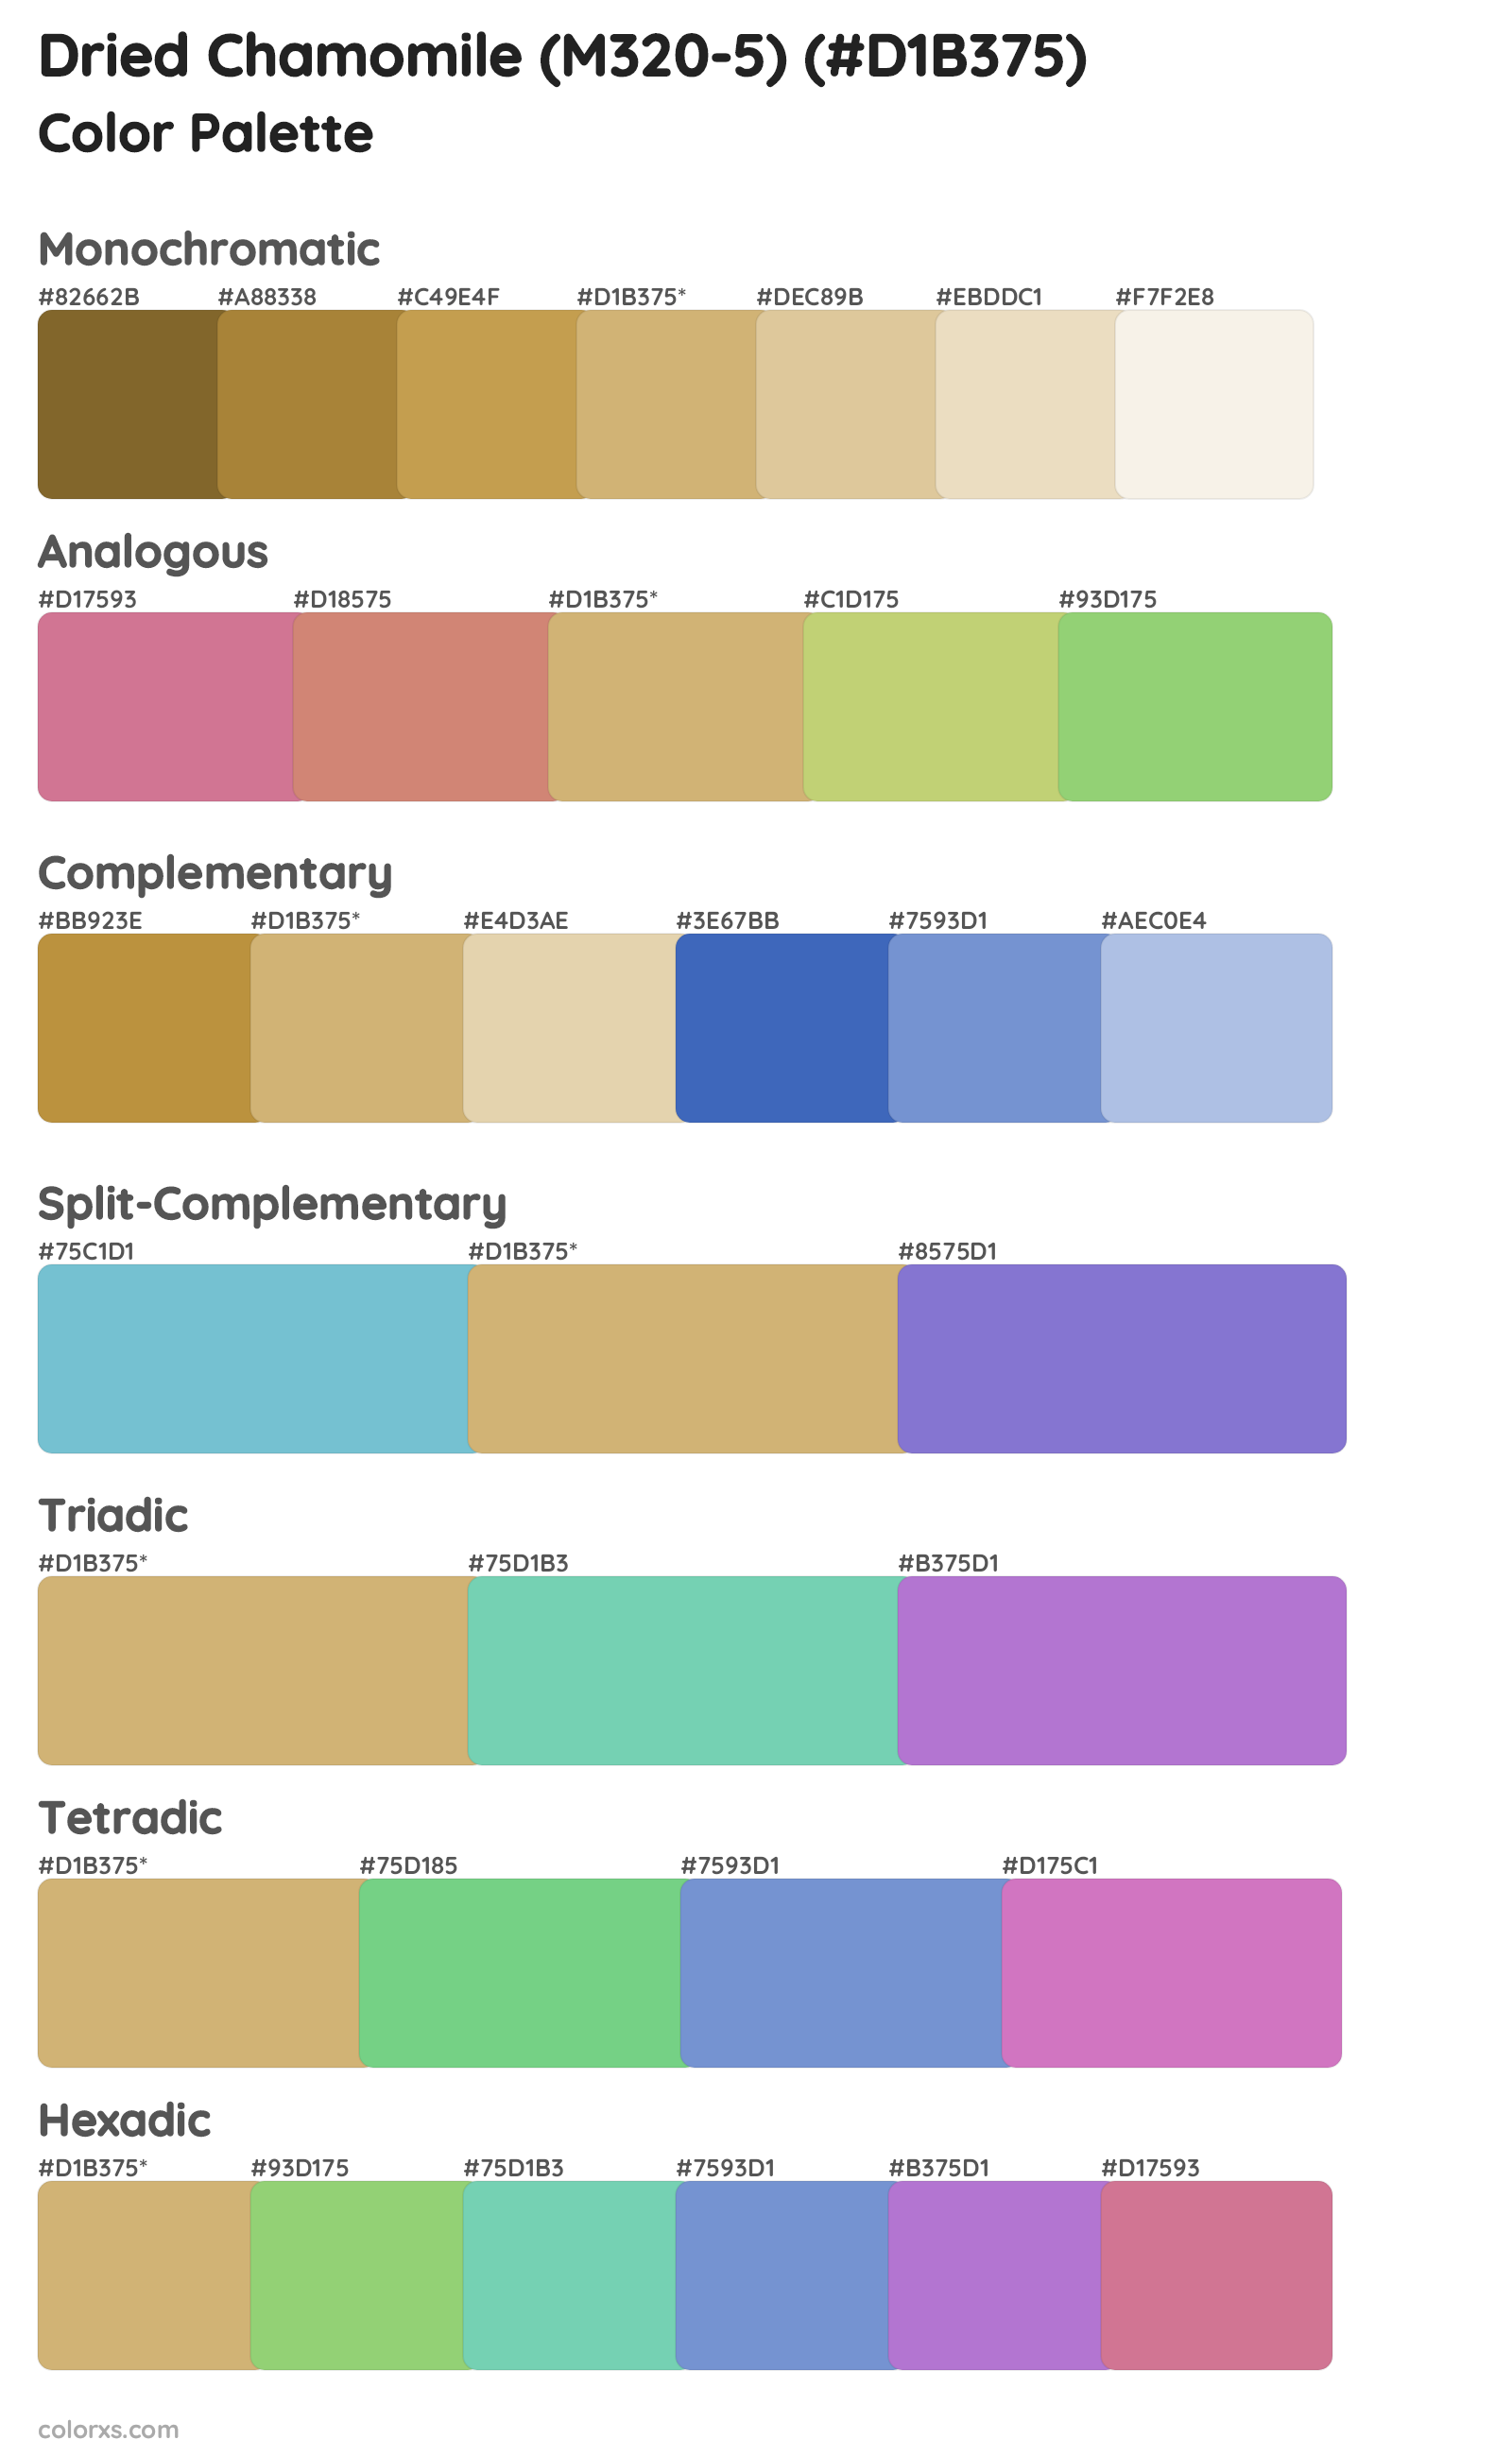 Dried Chamomile (M320-5) Color Scheme Palettes